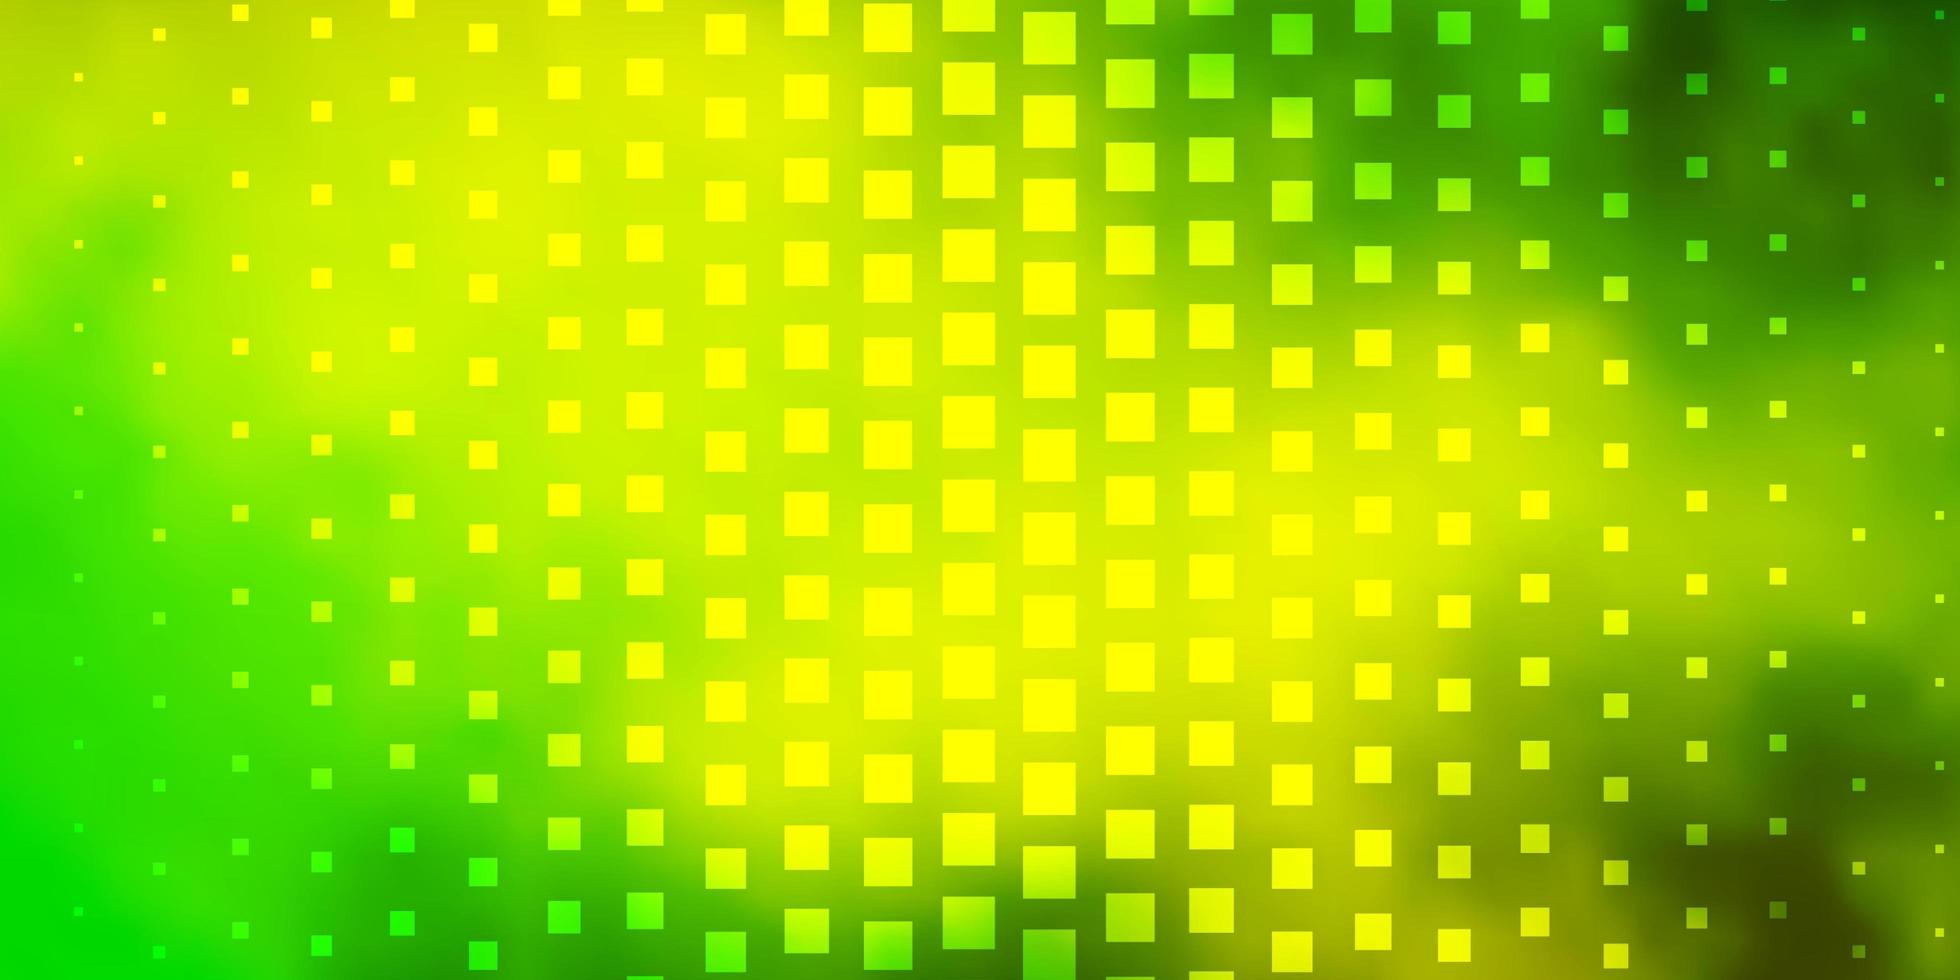 modèle vectoriel jaune vert clair dans l'illustration des rectangles avec un ensemble de motifs de rectangles dégradés pour les dépliants de brochures commerciales